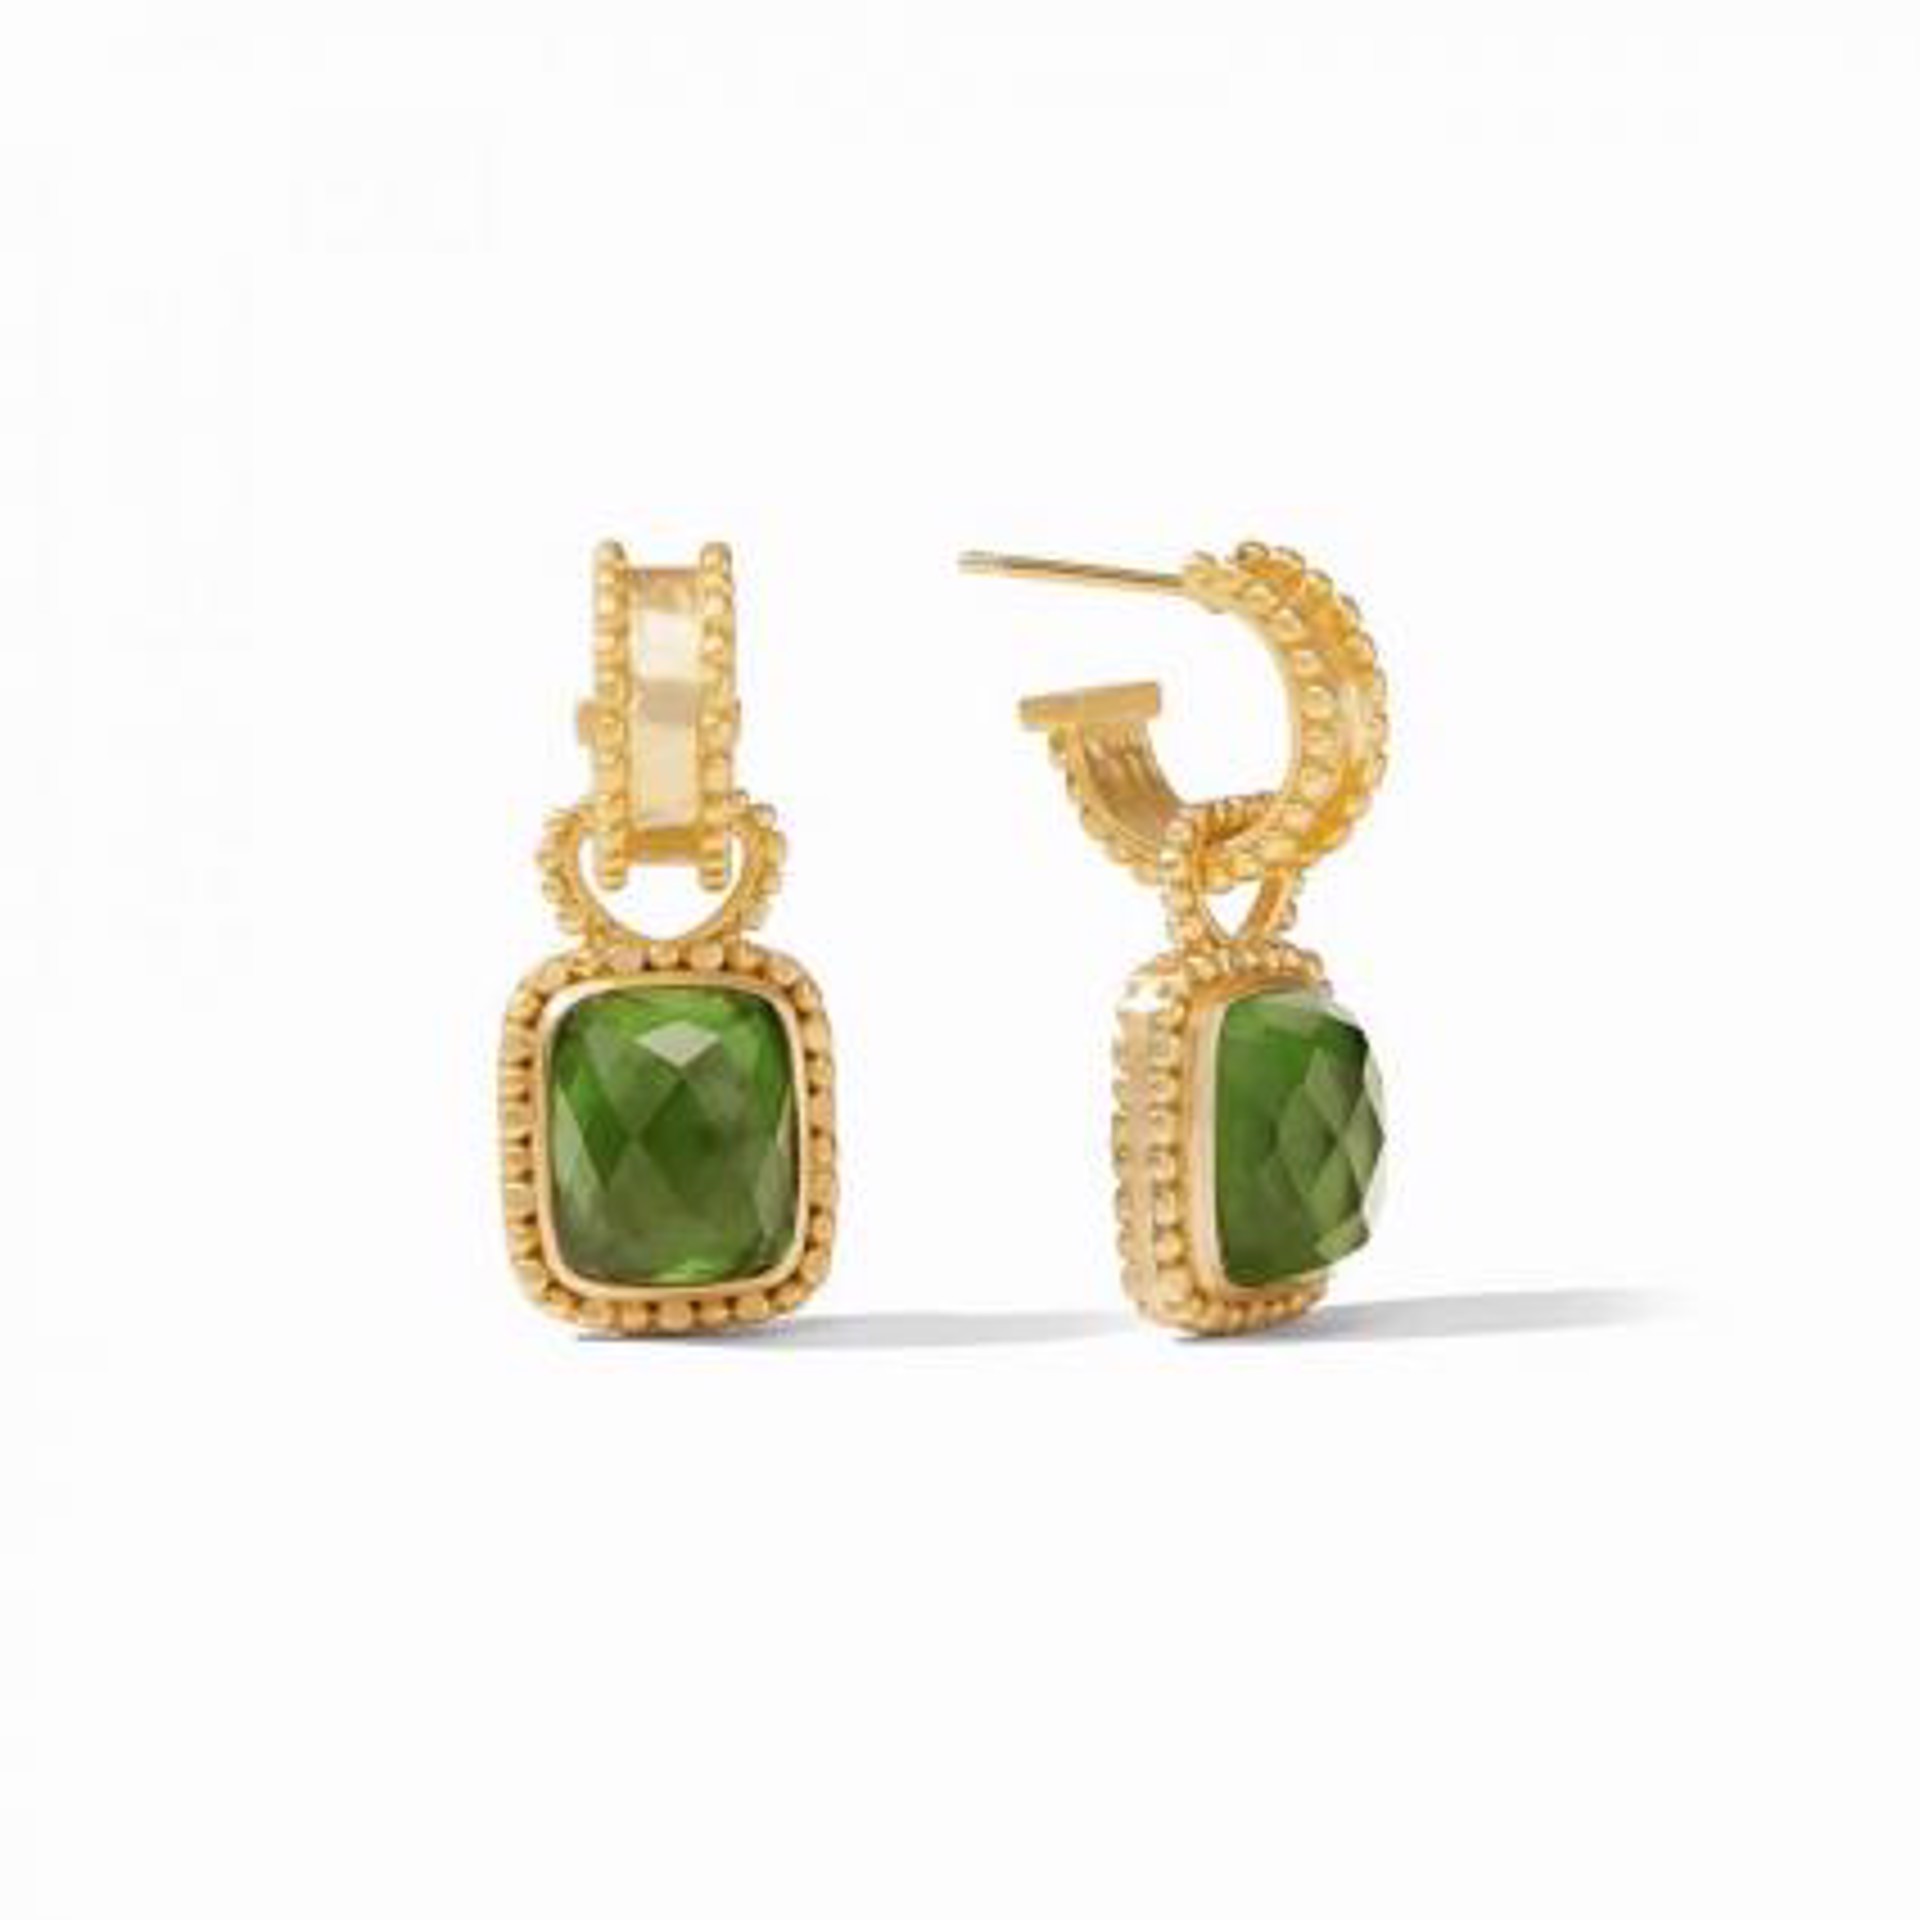 Marbella Hoop & Charm Earring - Iridescent Jade Green by Julie Vos